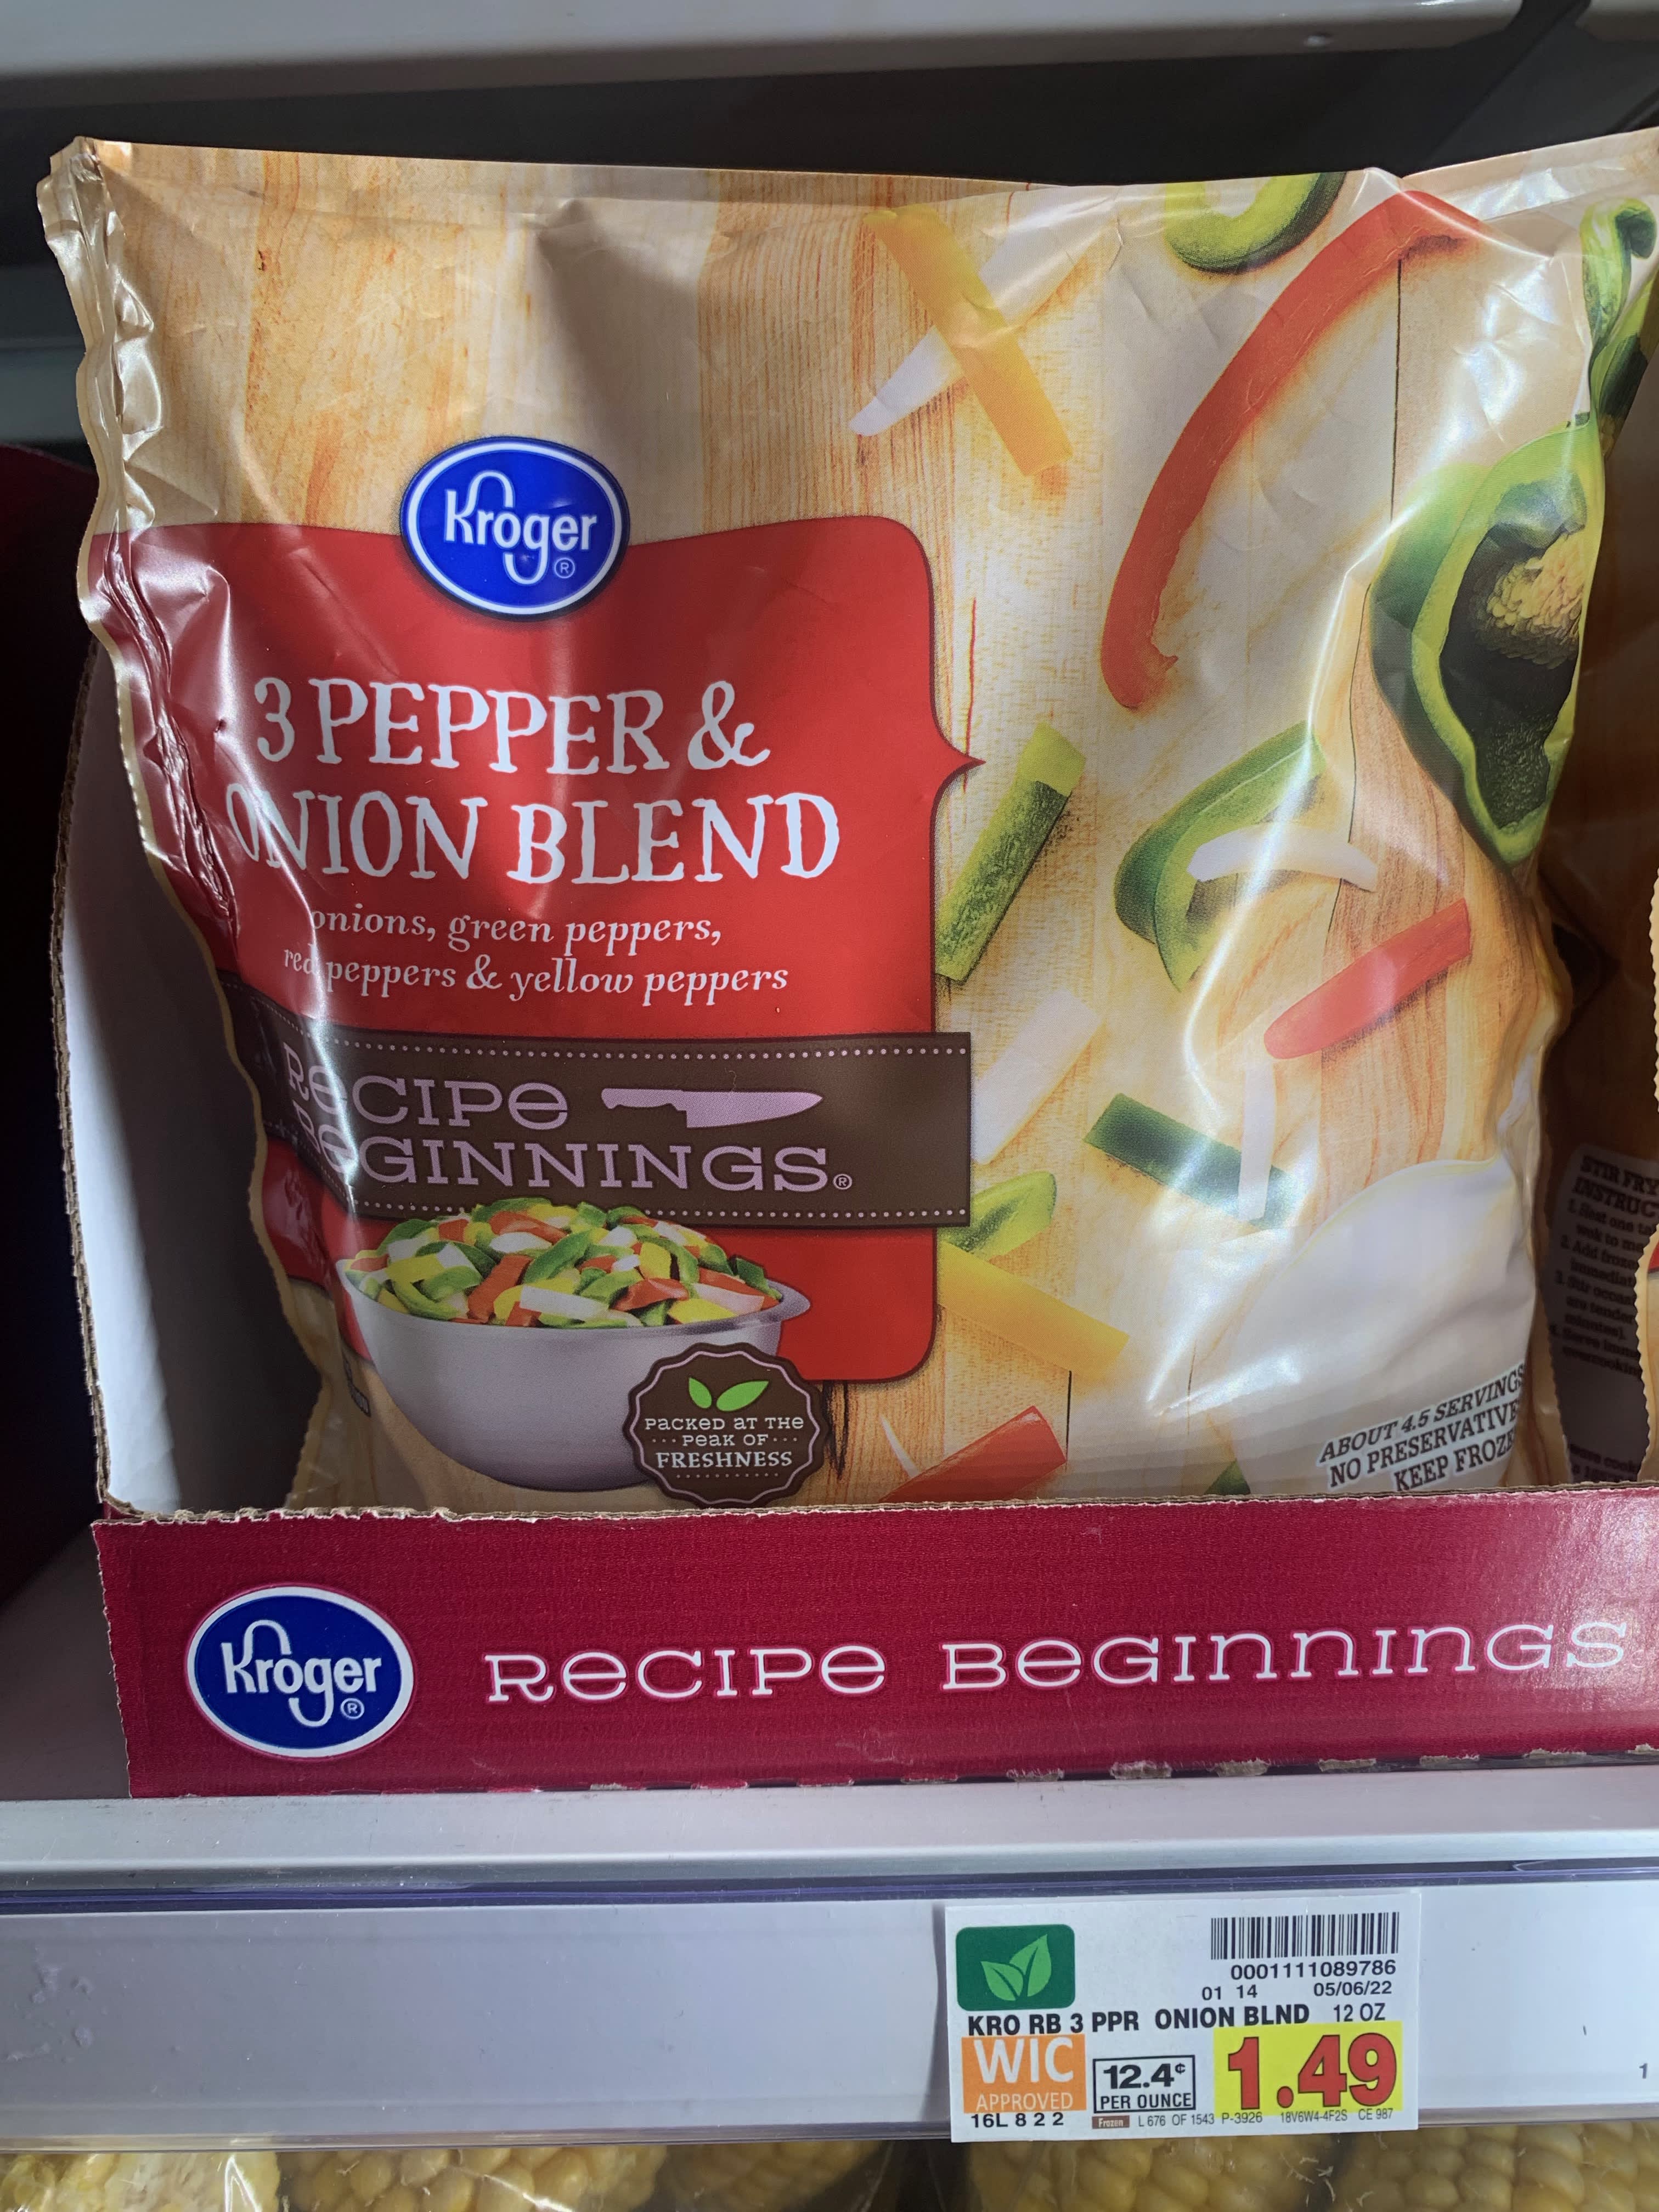 Kroger® Recipe Beginnings Frozen 3 Pepper & Onion Blend, 12 oz - Kroger